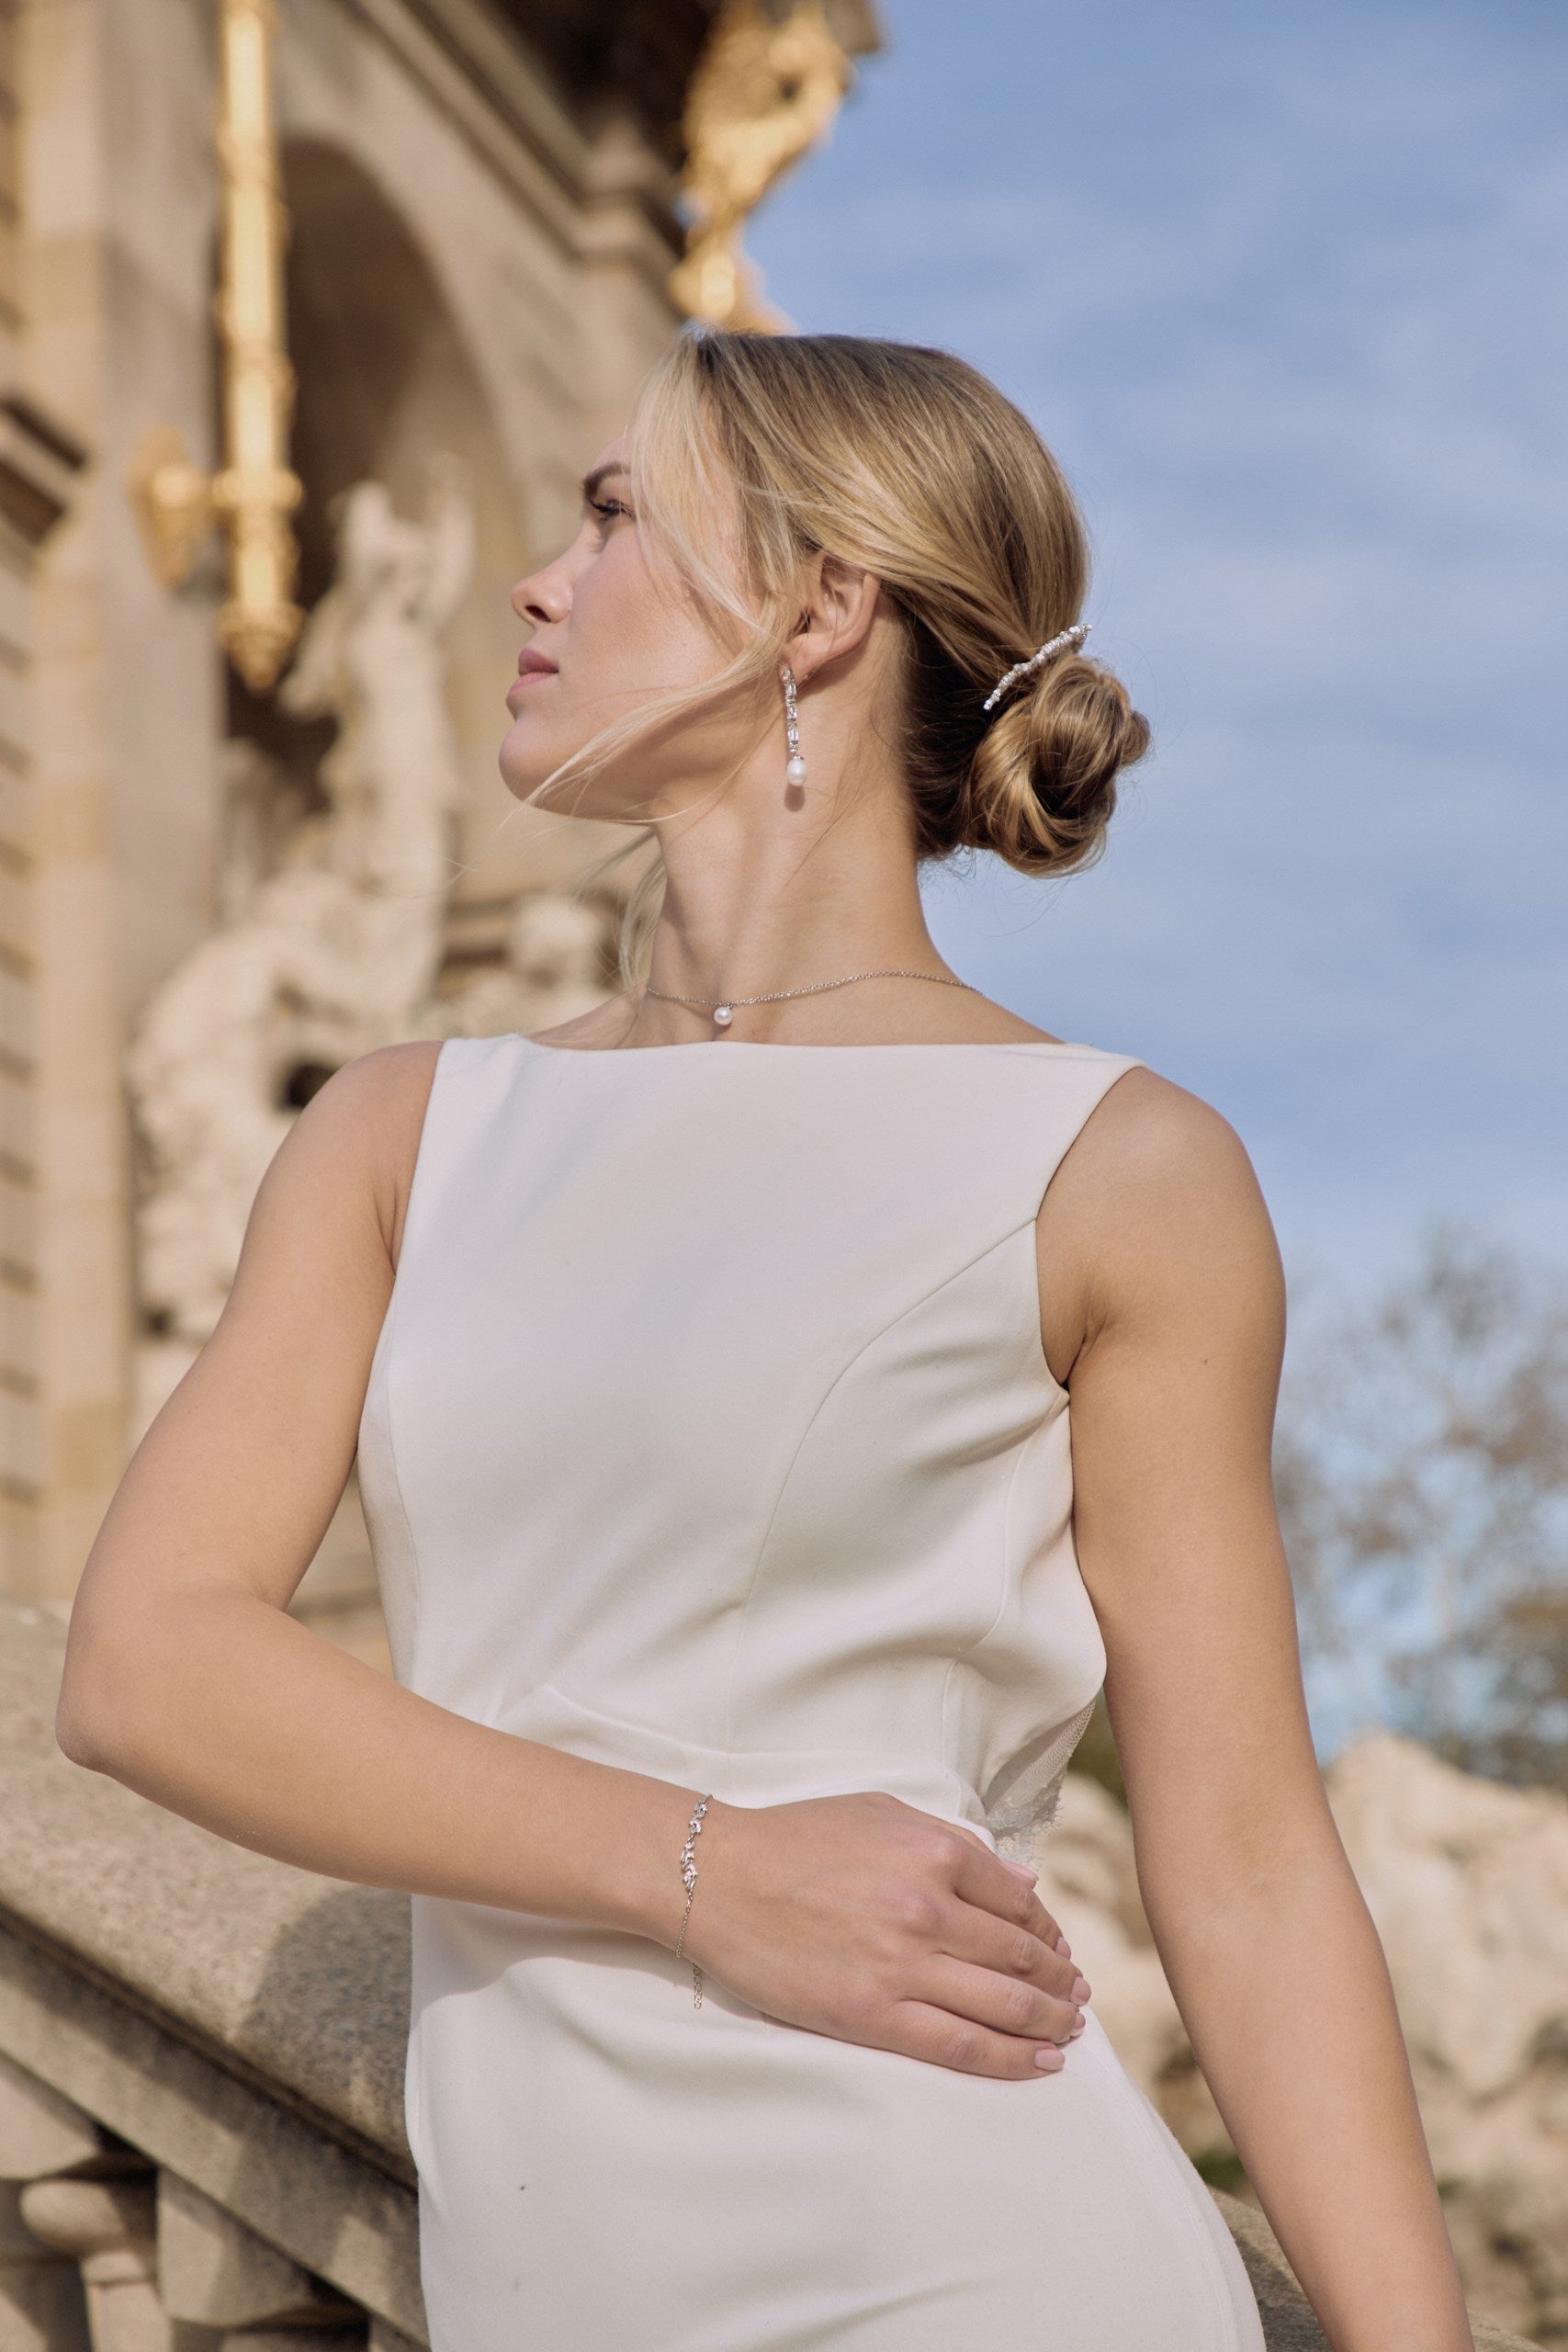 Femme de face avec sa tête de profil mettant en avant le bracelet qu'elle porte au poignet, son collier de dos ras de cou et ses boucles d'oreilles